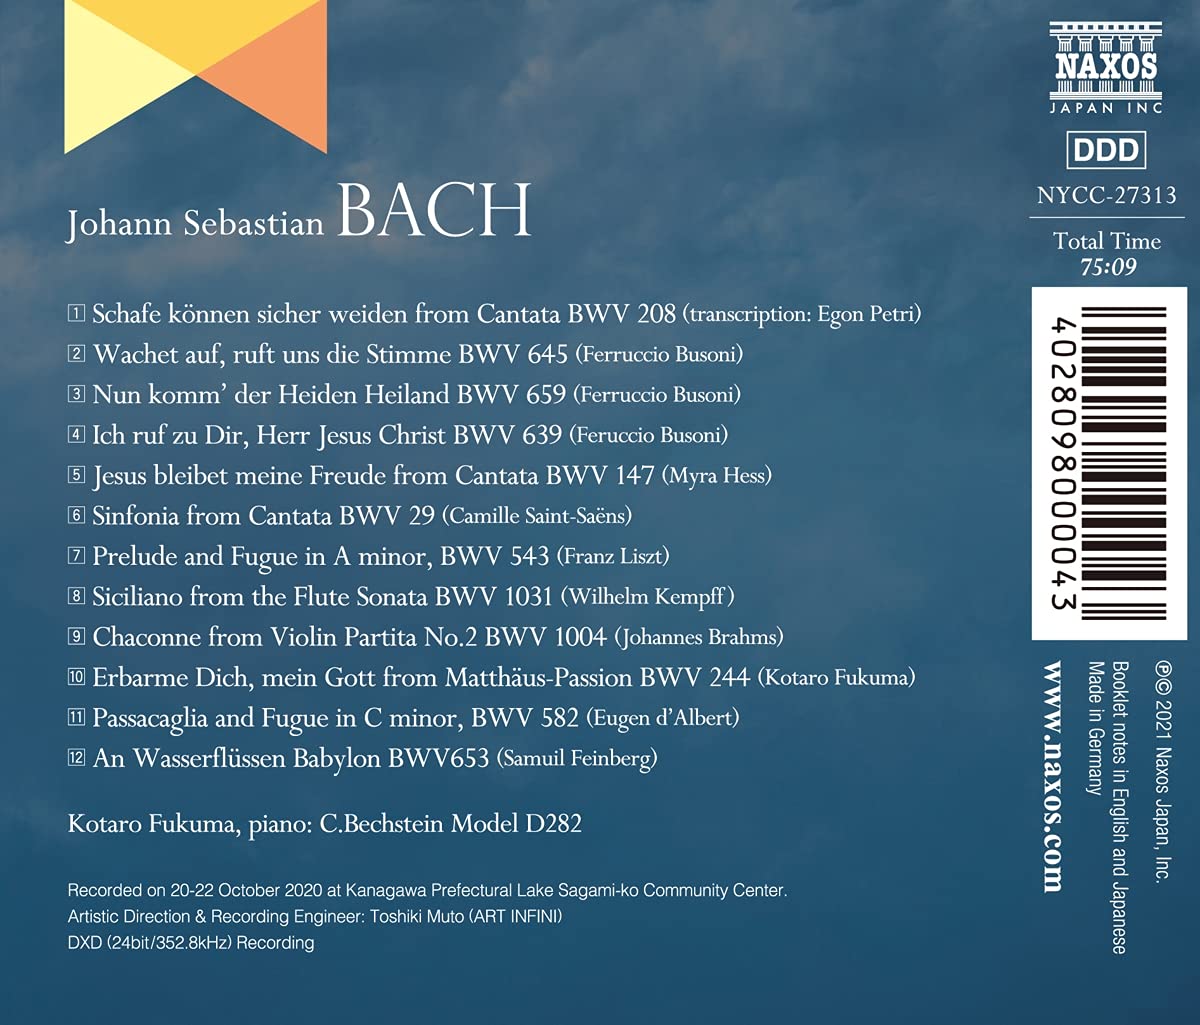 Kotaro Fukuma CD - JS Bach Piano Transcriptions